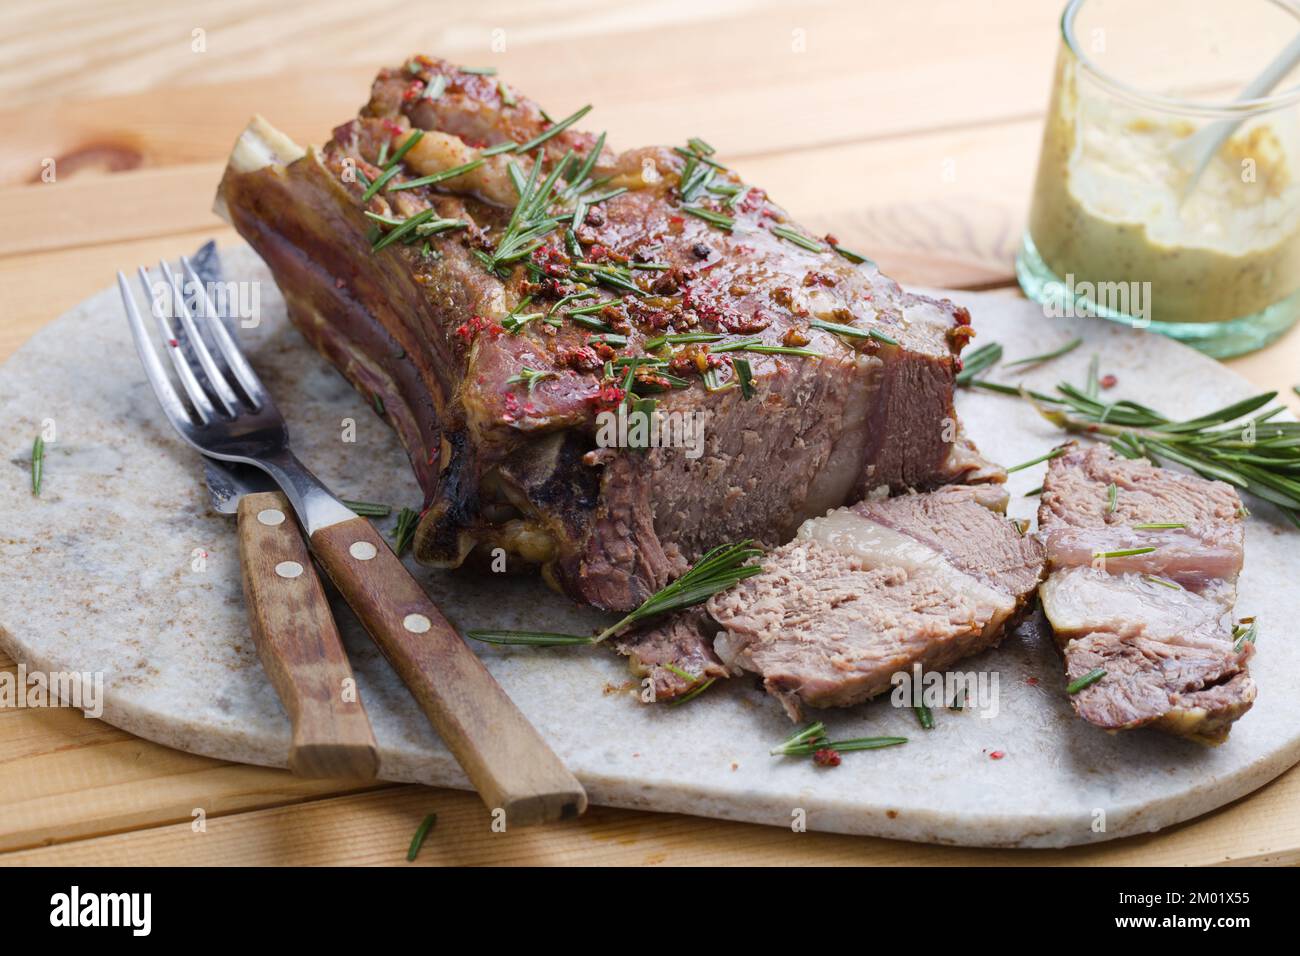 Rib eye steak with mustard sauce and rosemary Stock Photo